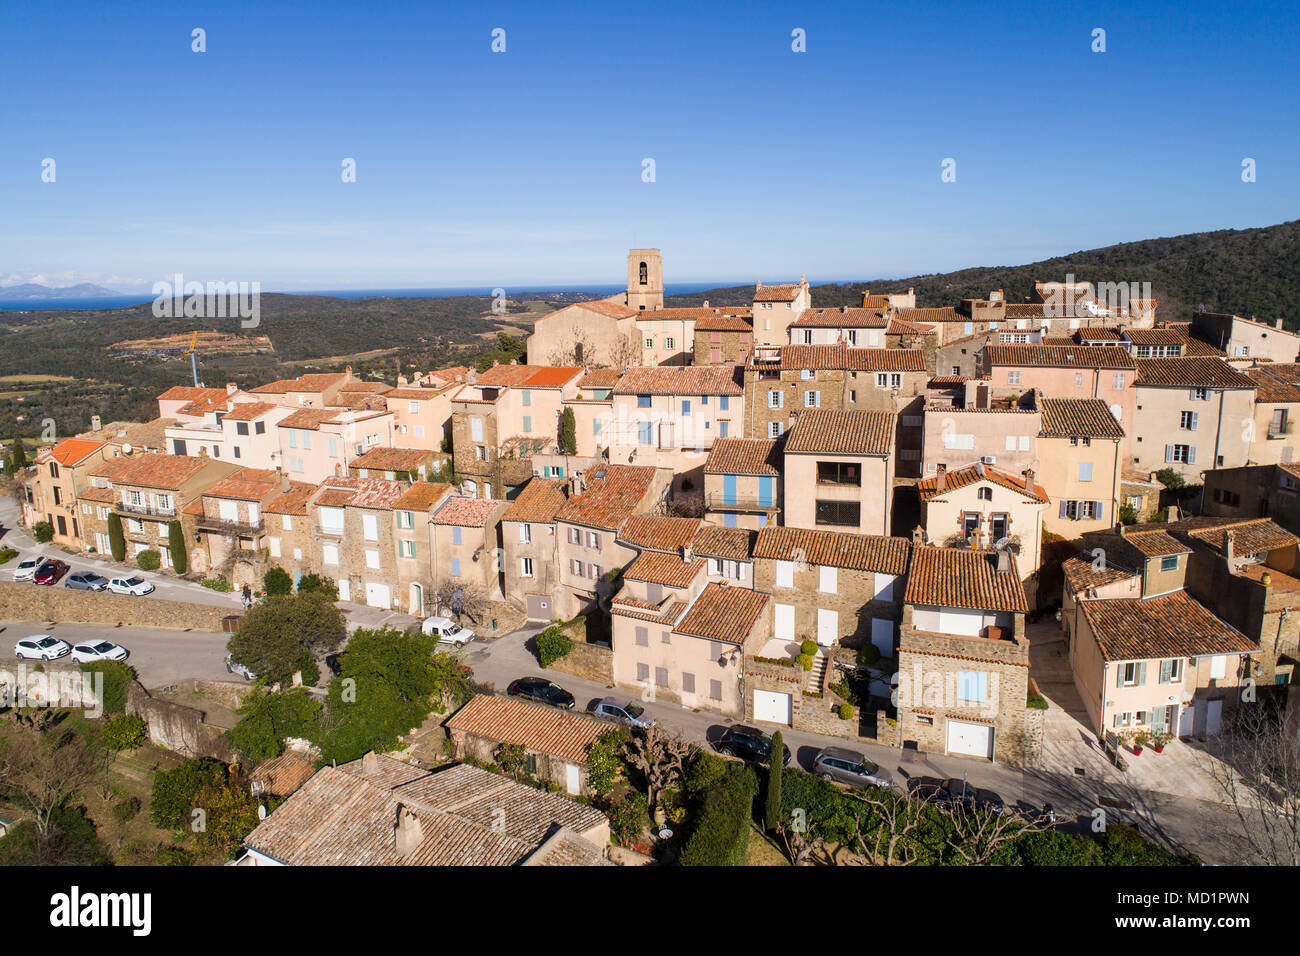 France, Provence-Alpes-Côte d'Azur, Var, vue aérienne du village de Gassin, étiqueté Les Plus Beaux Villages de France (la plus belle Vill Banque D'Images